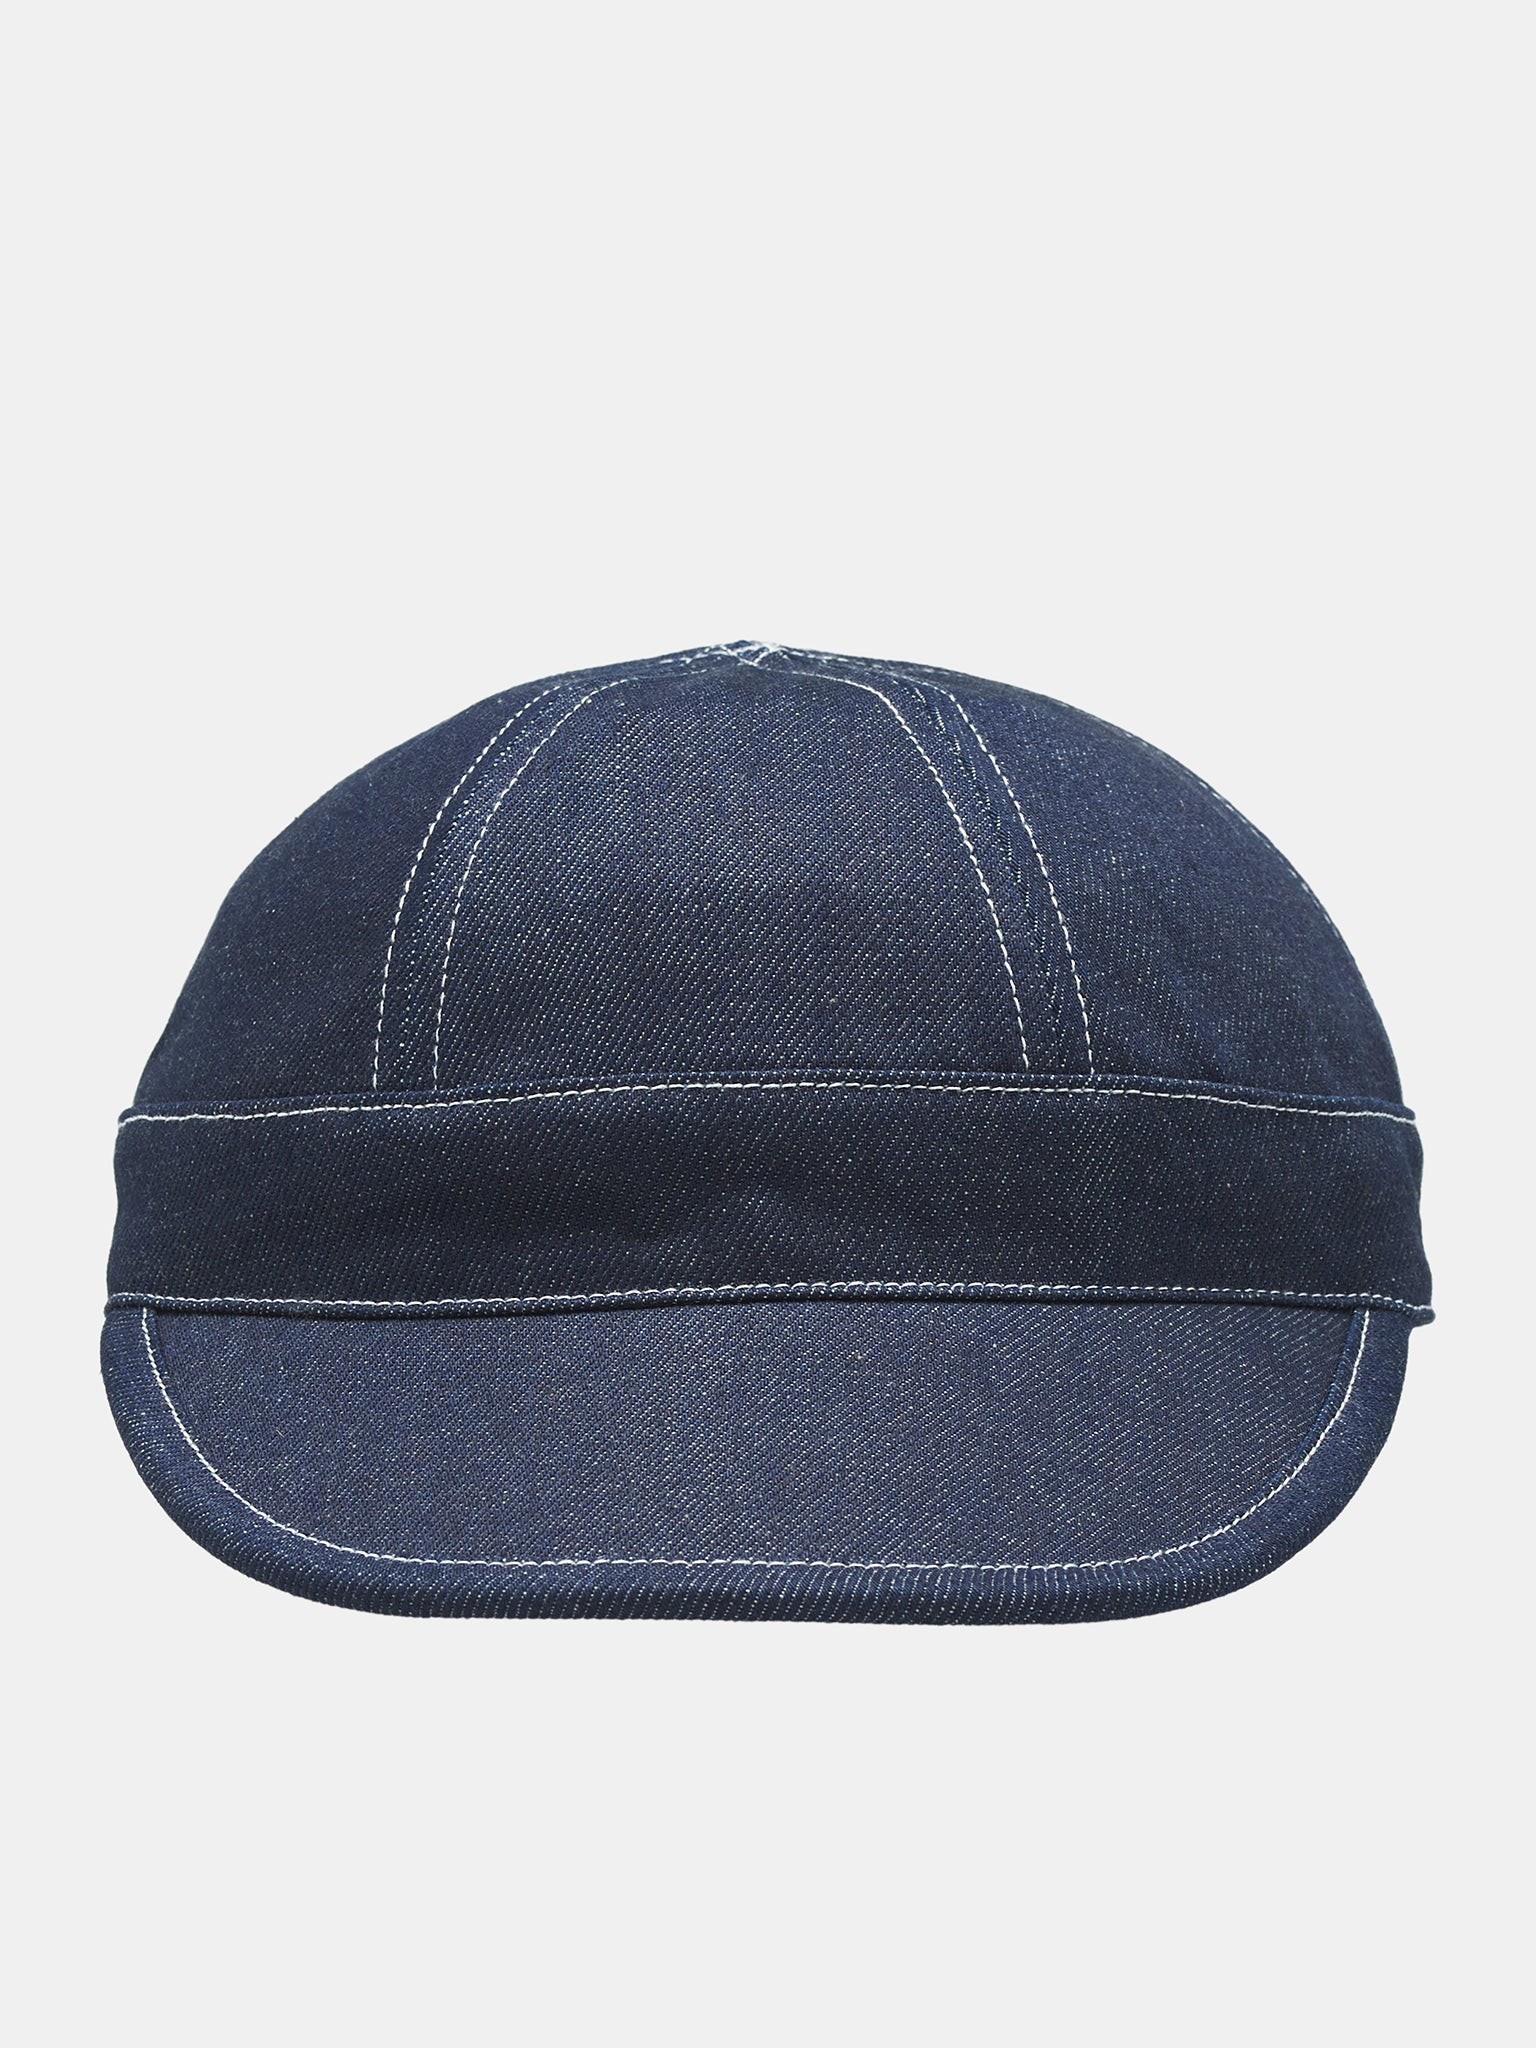 JACQUEMUS hat | H. Lorenzo - front